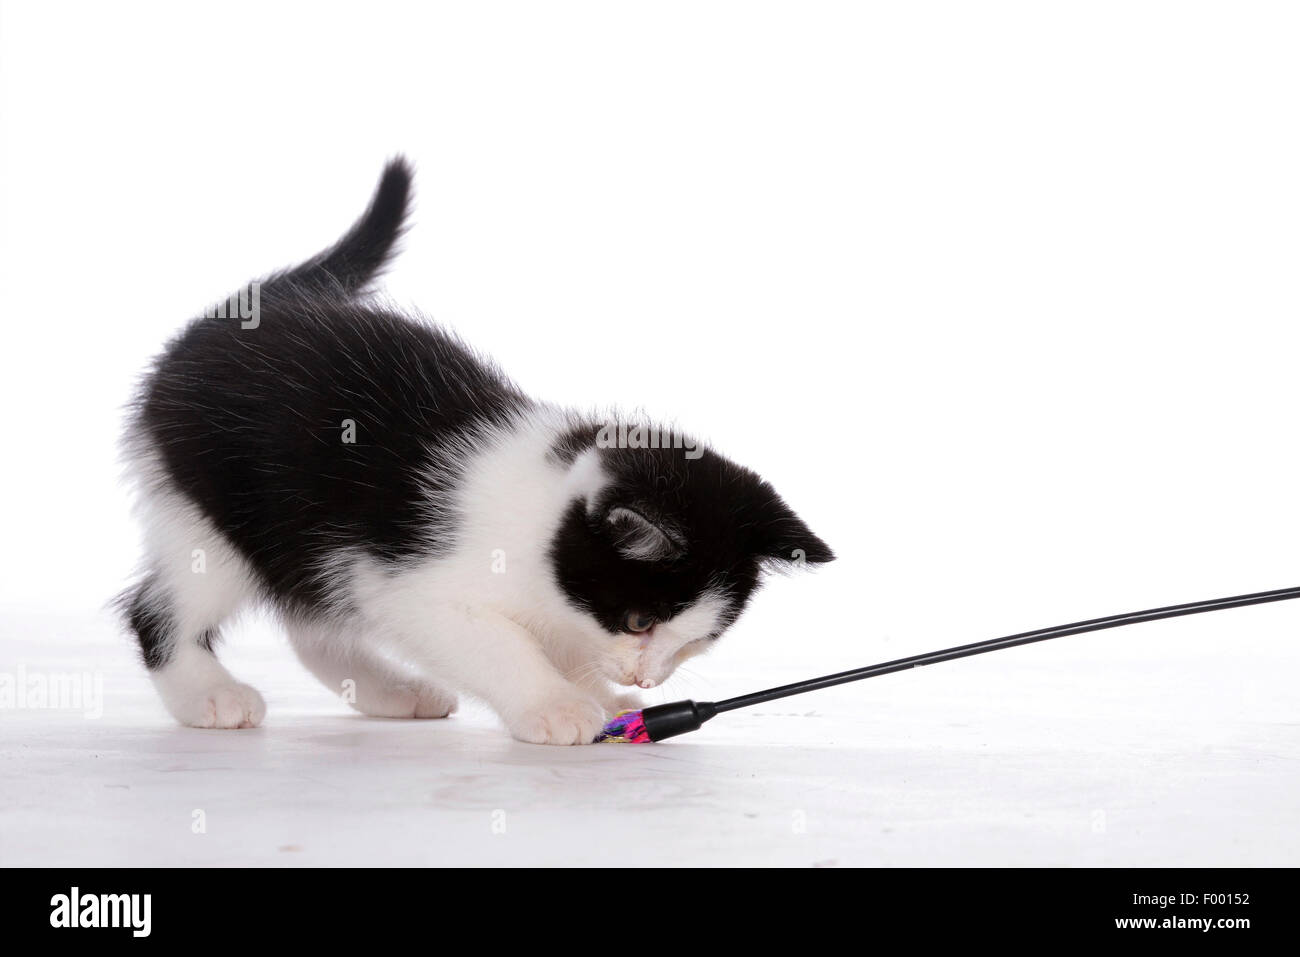 Il gatto domestico, il gatto di casa (Felis silvestris f. catus), pezzata nera e whit gattino giocando con una piuma frond Foto Stock